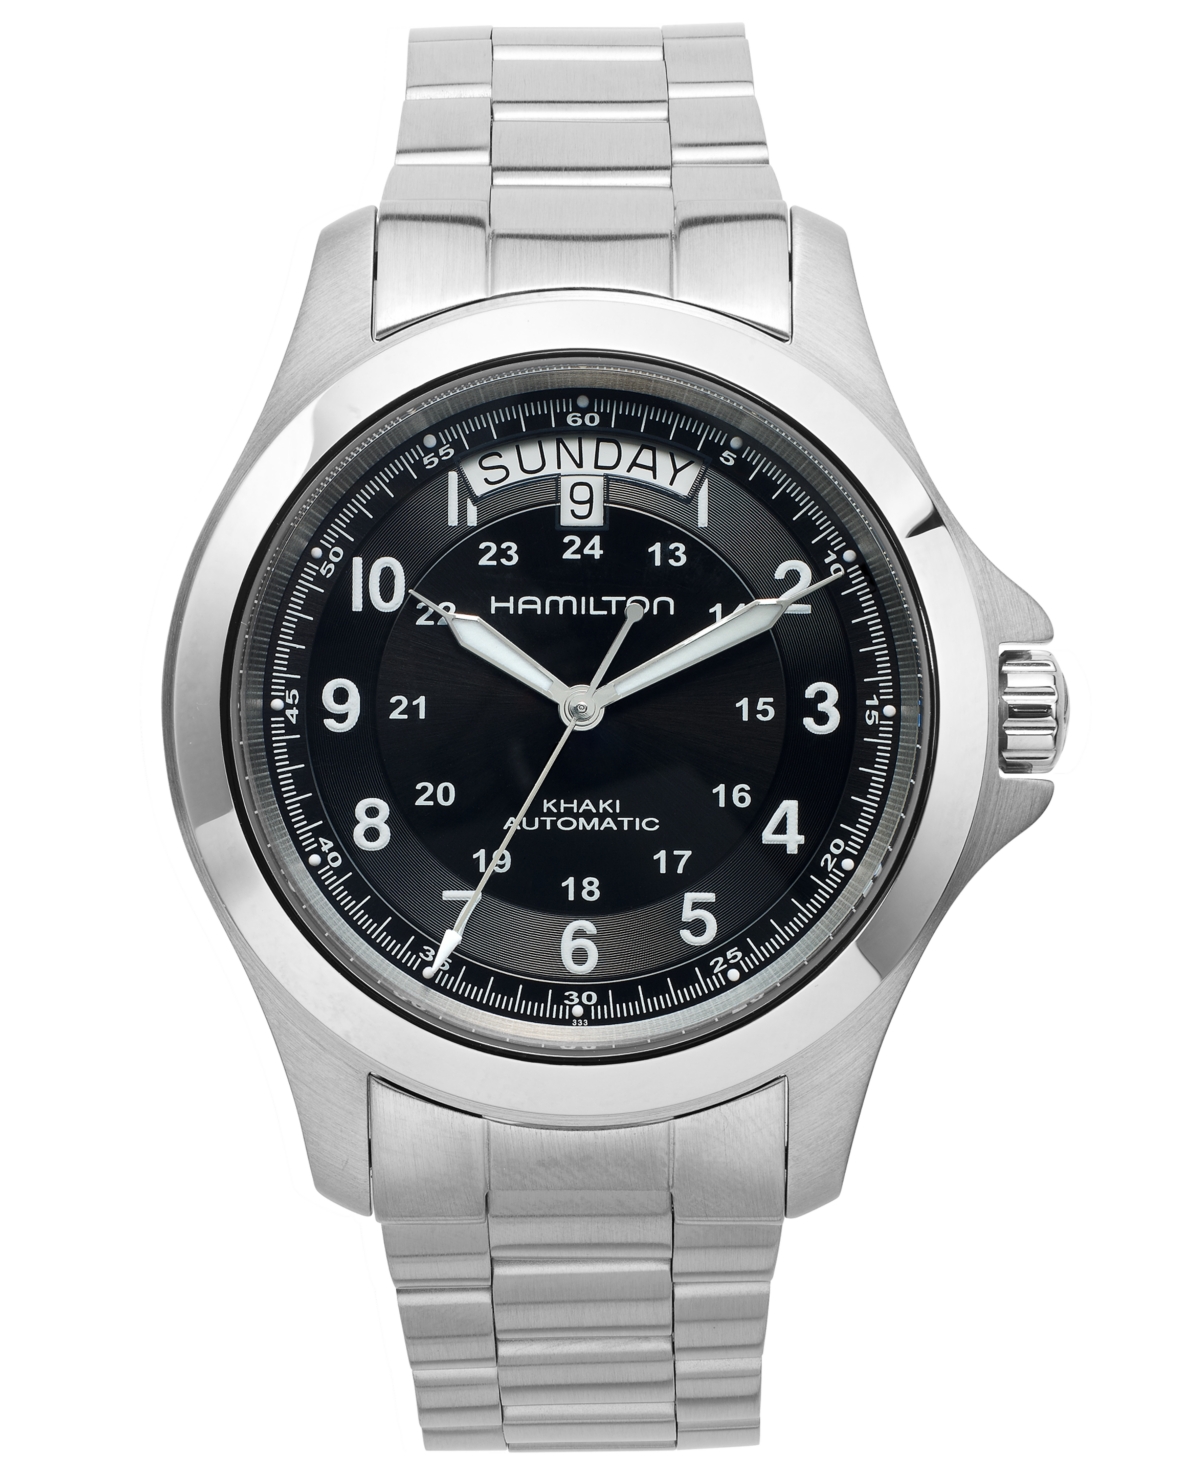 Men's Swiss Automatic Khaki King Stainless Steel Bracelet Watch 40mm H64455133 - Silver